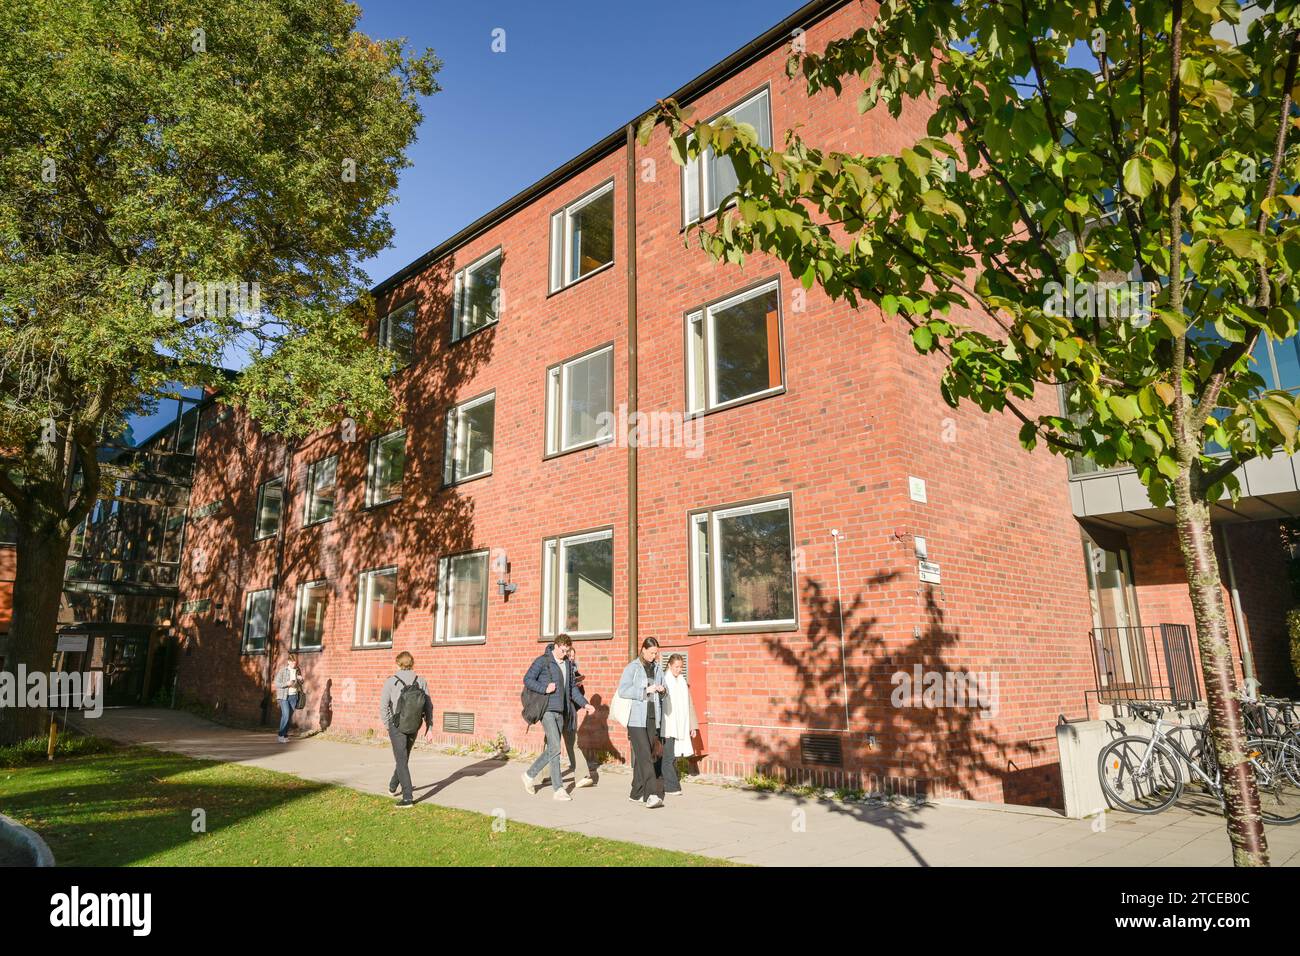 Gebäude auf dem Campus Königliche Technische Hochschule KTH, Kungliga Tekniska Högskolan, Brinellvägen, Stockholm, Schweden Banque D'Images